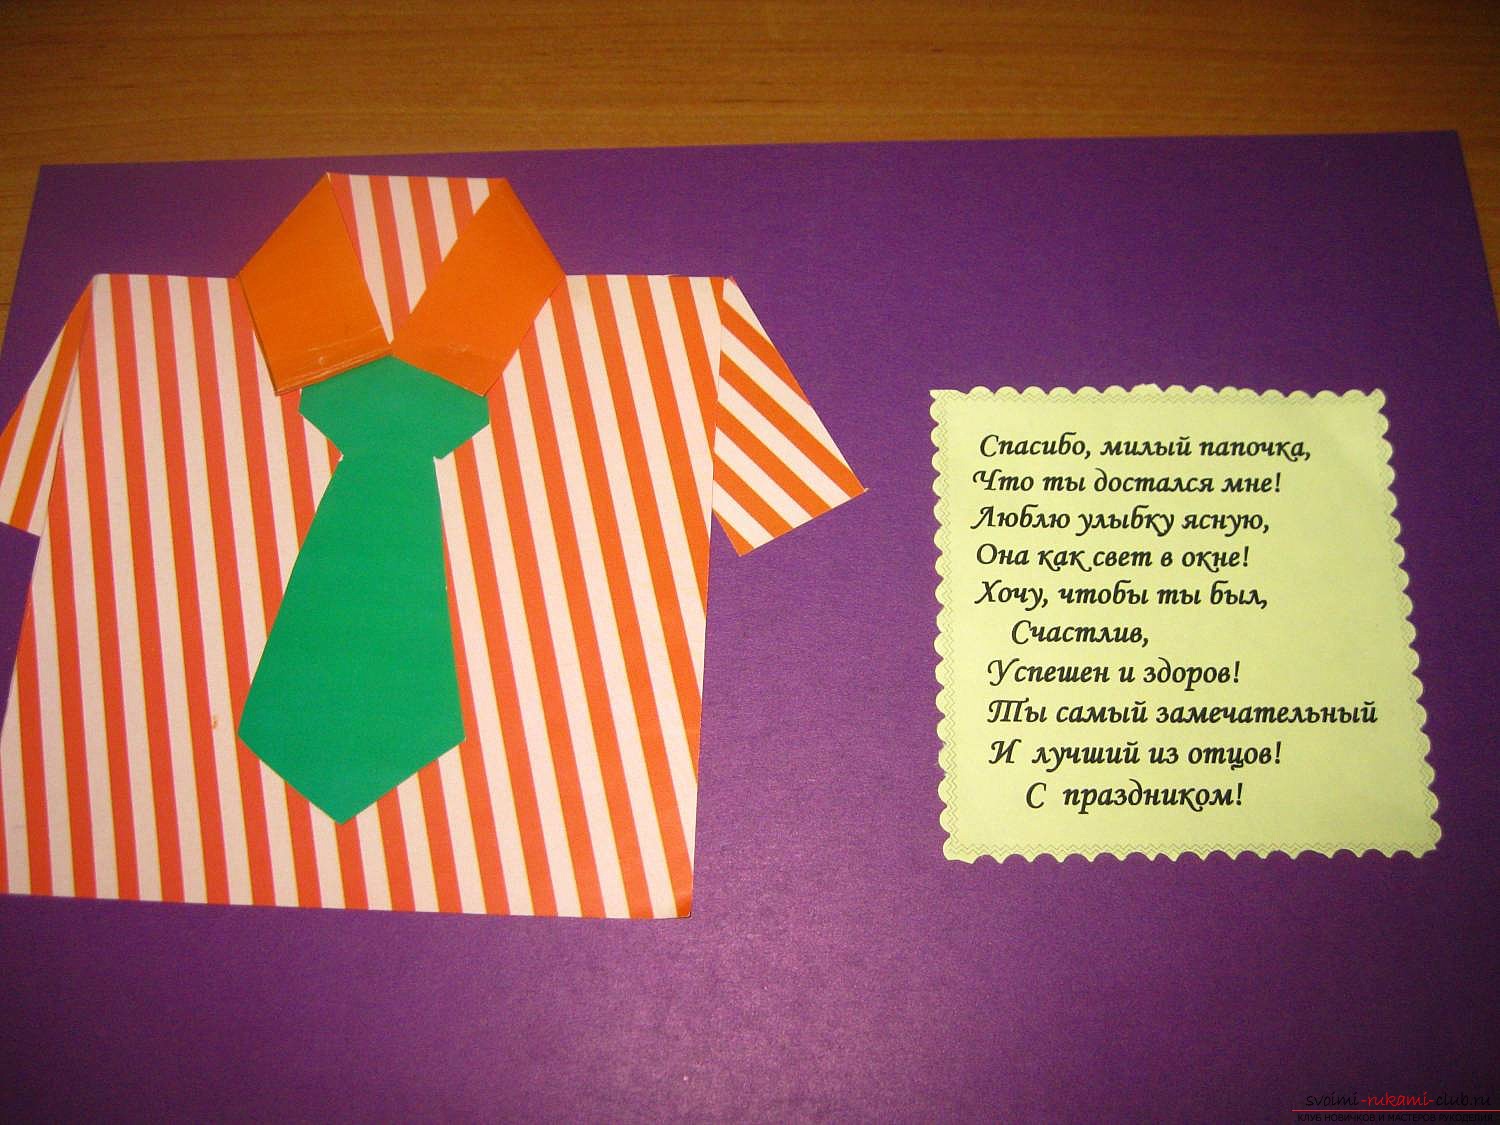 Ansichtkaart met een stropdas, gemaakt door eigen handen. Foto van cadeaubonnen en ideeën. Foto №1